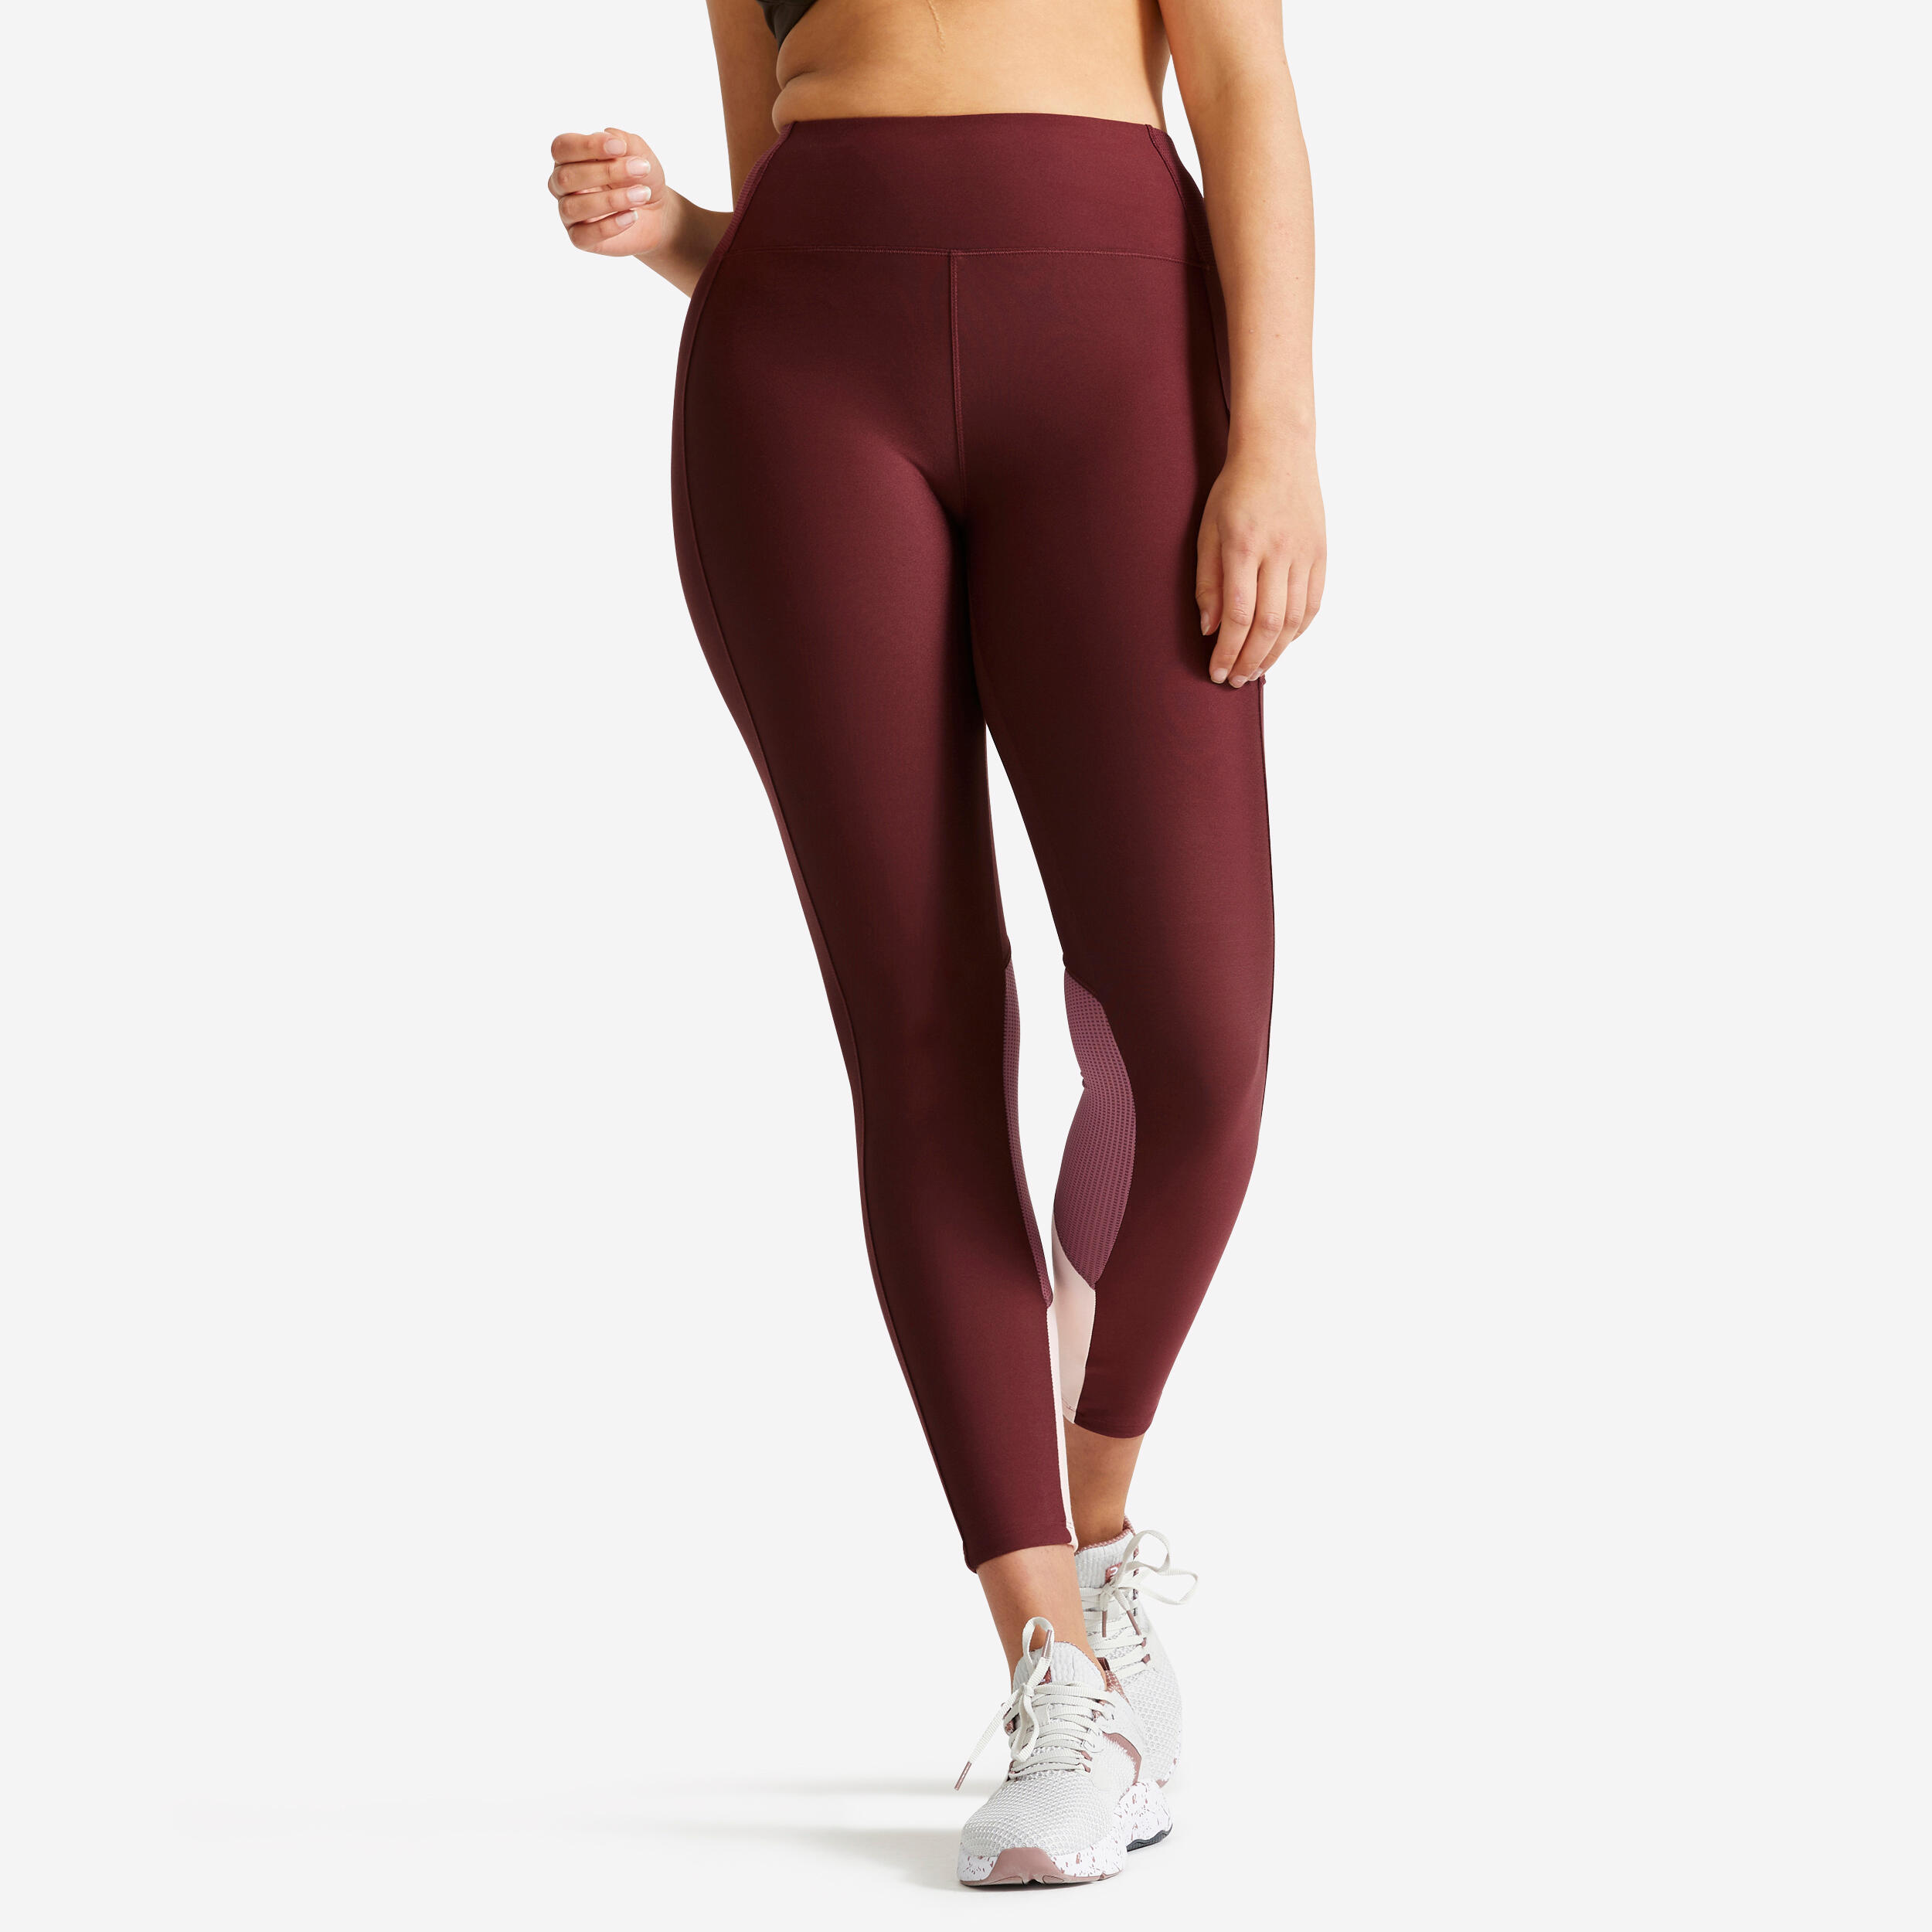 DOMYOS Women's phone pocket fitness high-waisted leggings, burgundy